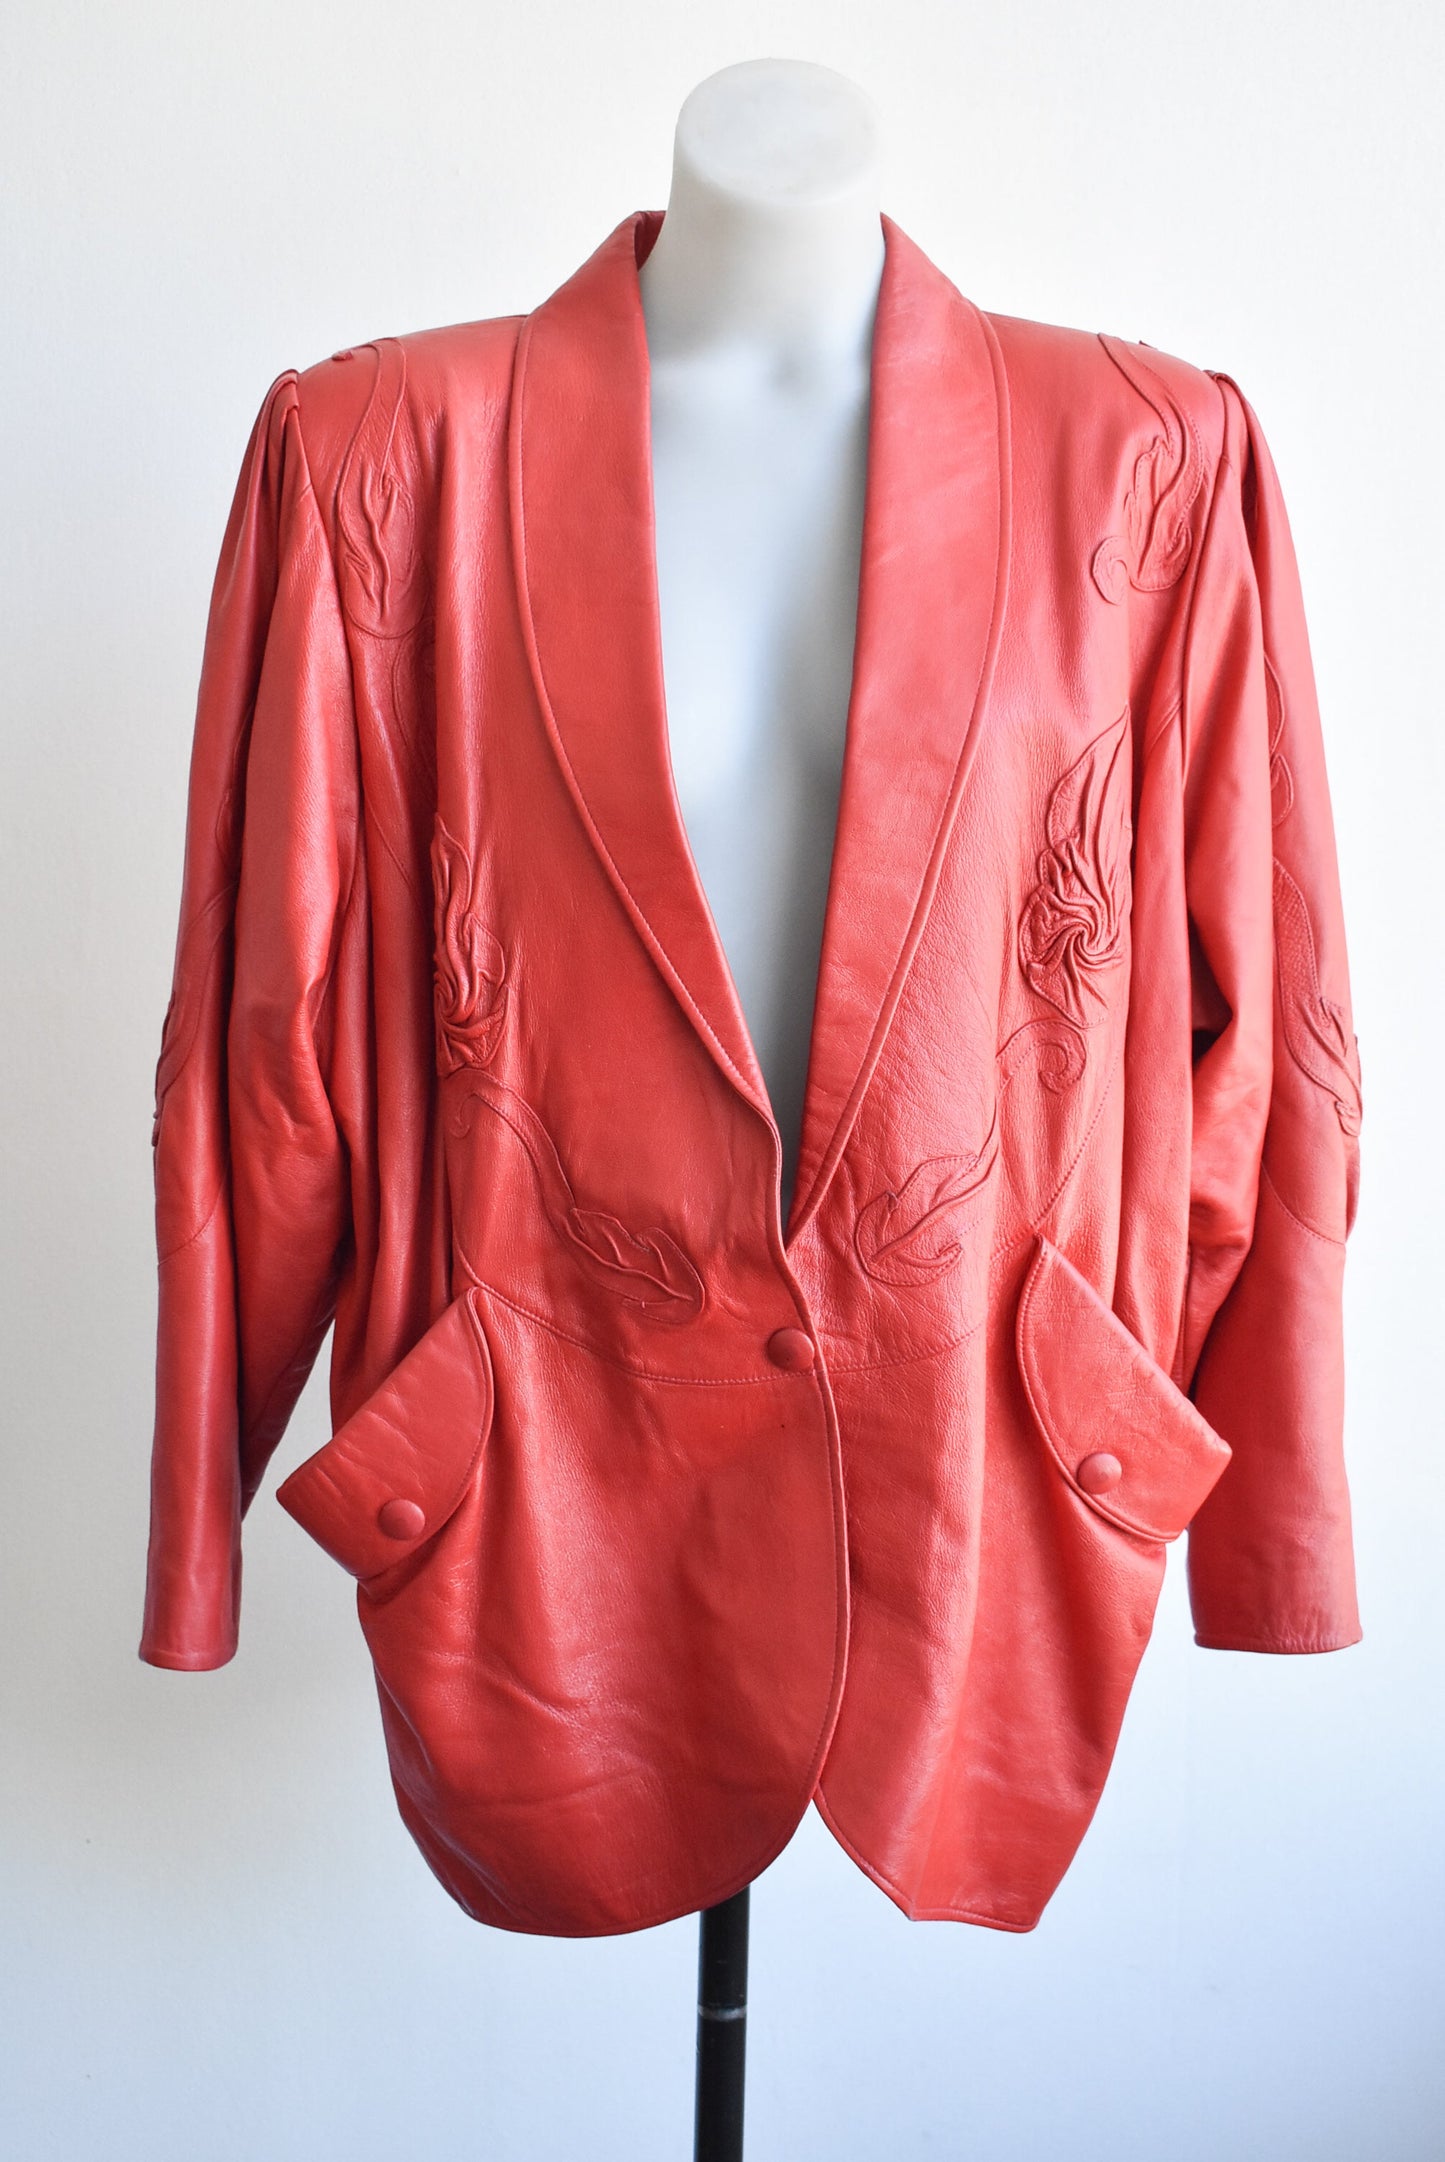 Kathmandu red print jacket, size 16 – Shop on Carroll Online